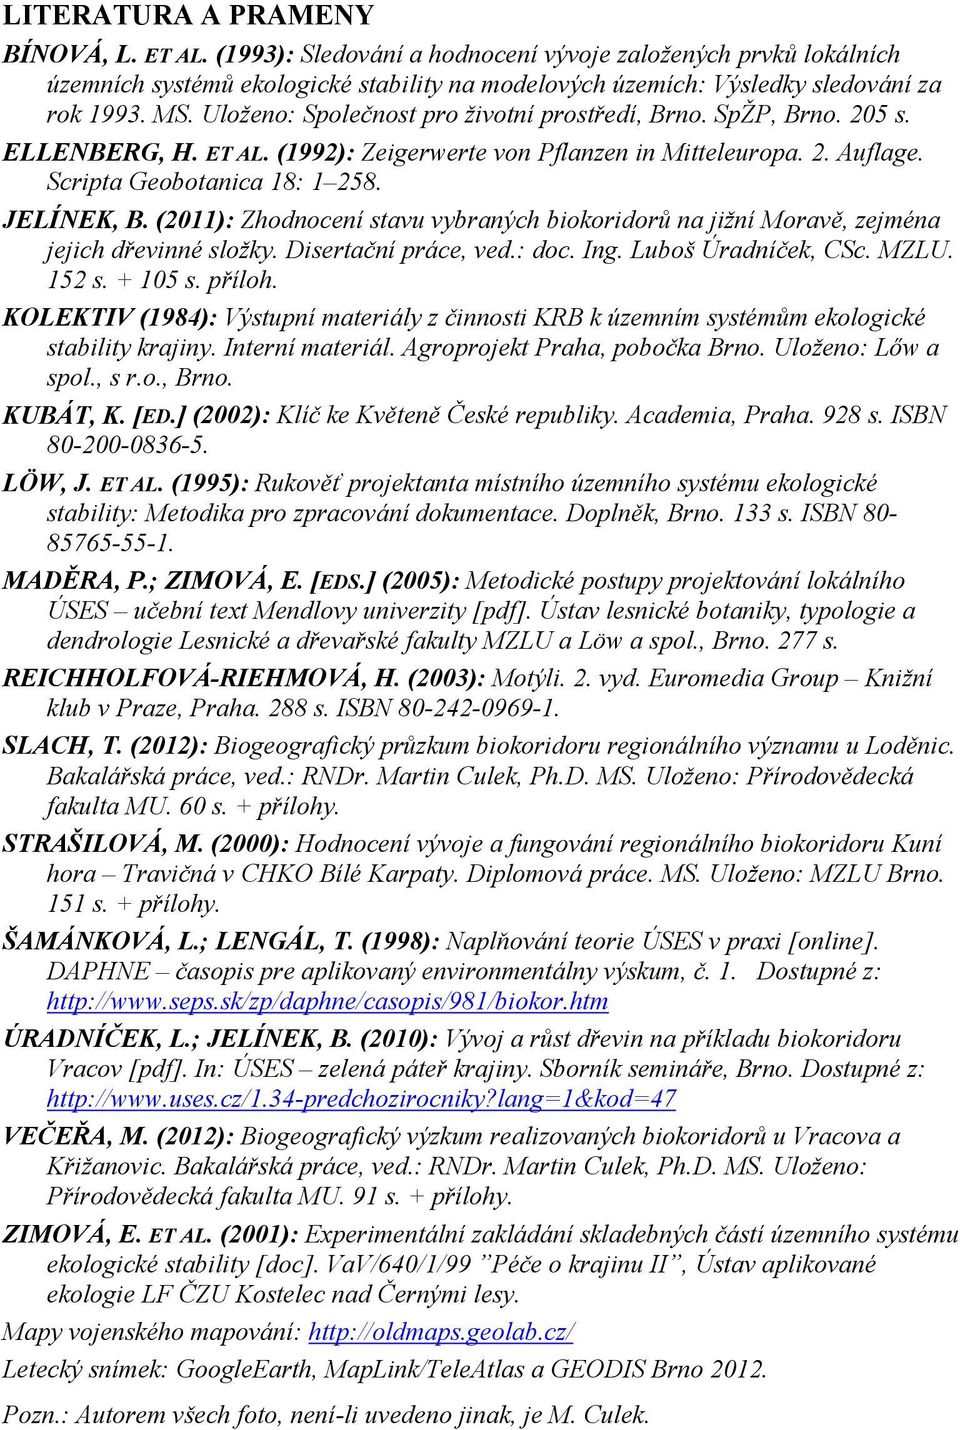 (2011): Zhodnocení stavu vybraných biokoridorů na jižní Moravě, zejména jejich dřevinné složky. Disertační práce, ved.: doc. Ing. Luboš Úradníček, CSc. MZLU. 152 s. + 105 s. příloh.